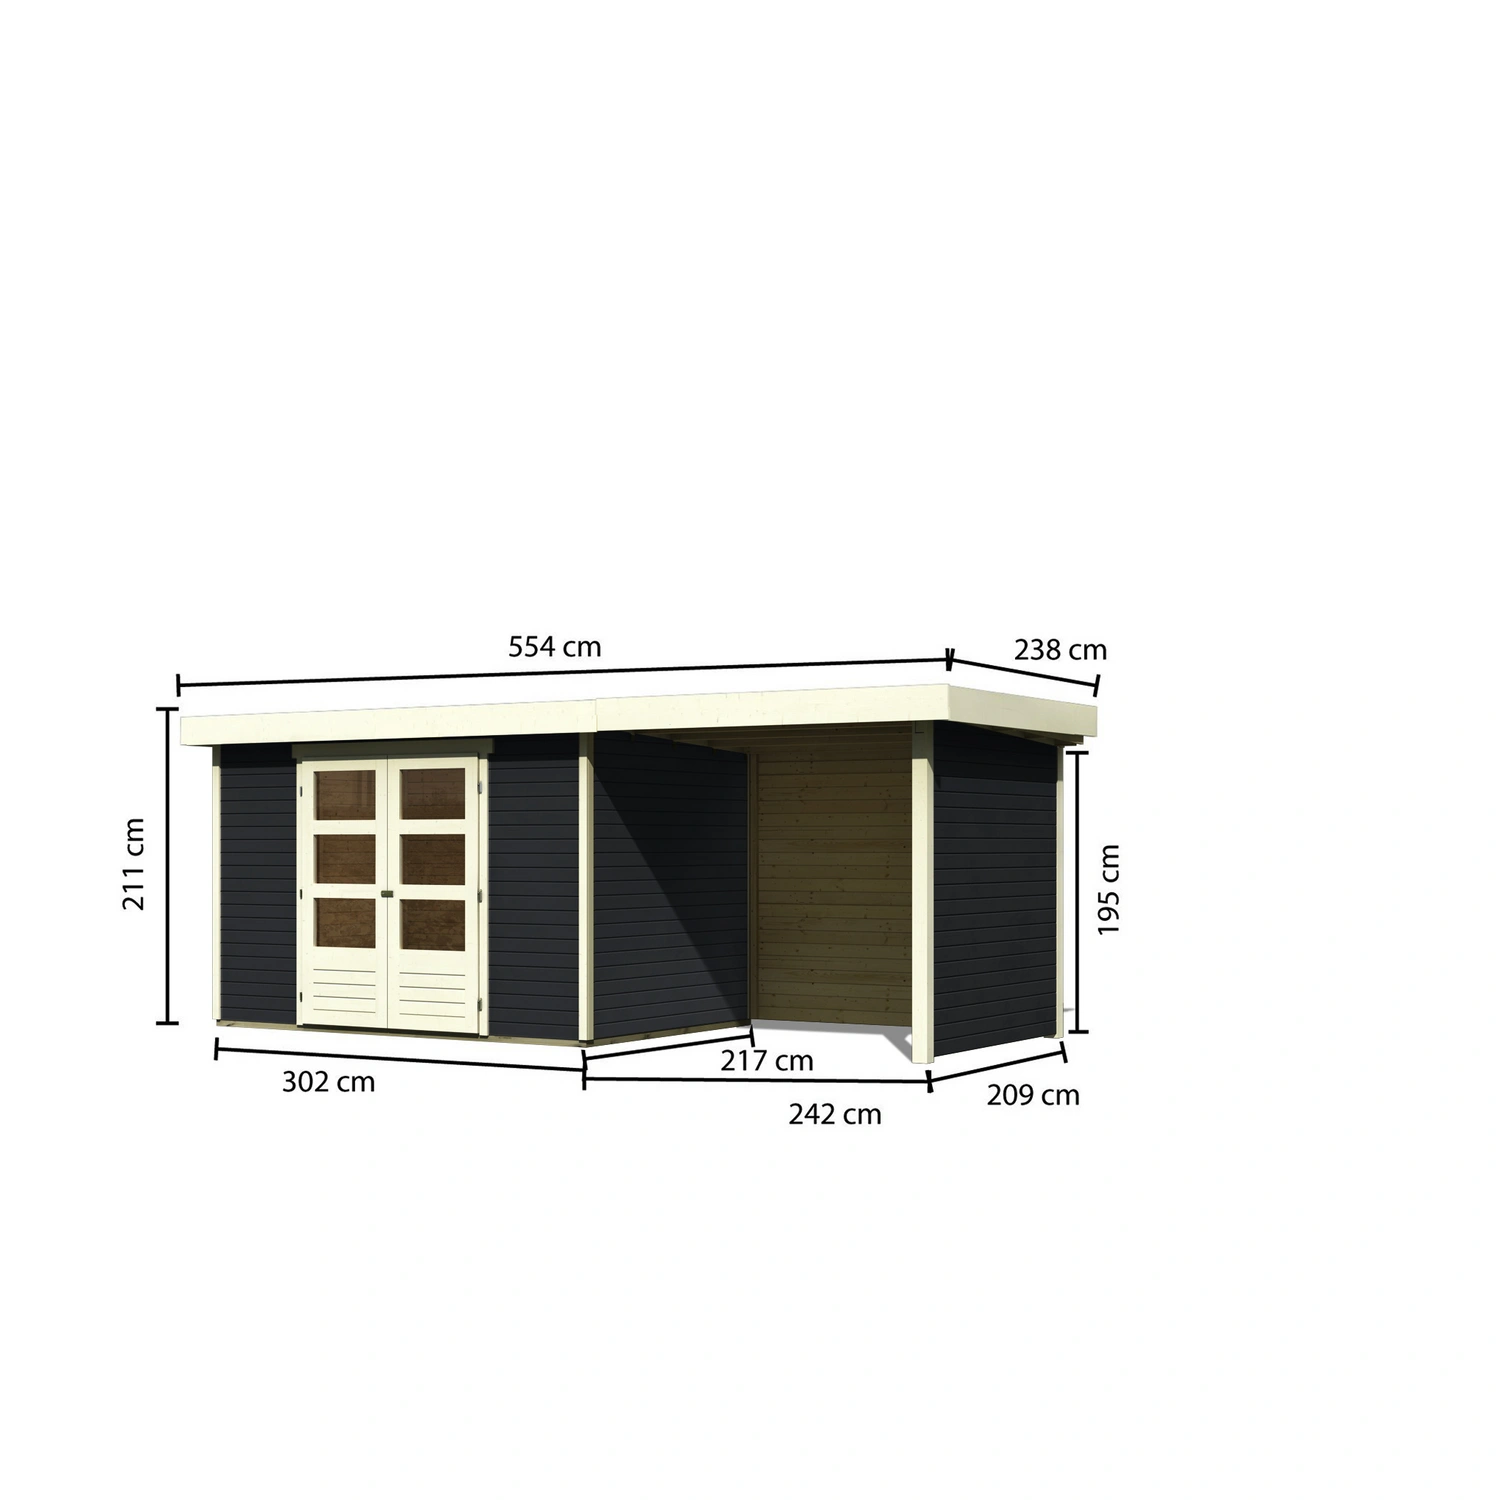 KARIBU Gartenhaus »Askola 4«, BxT: 302 x 217 cm (Außenmaße), Wandstärke: 19  mm